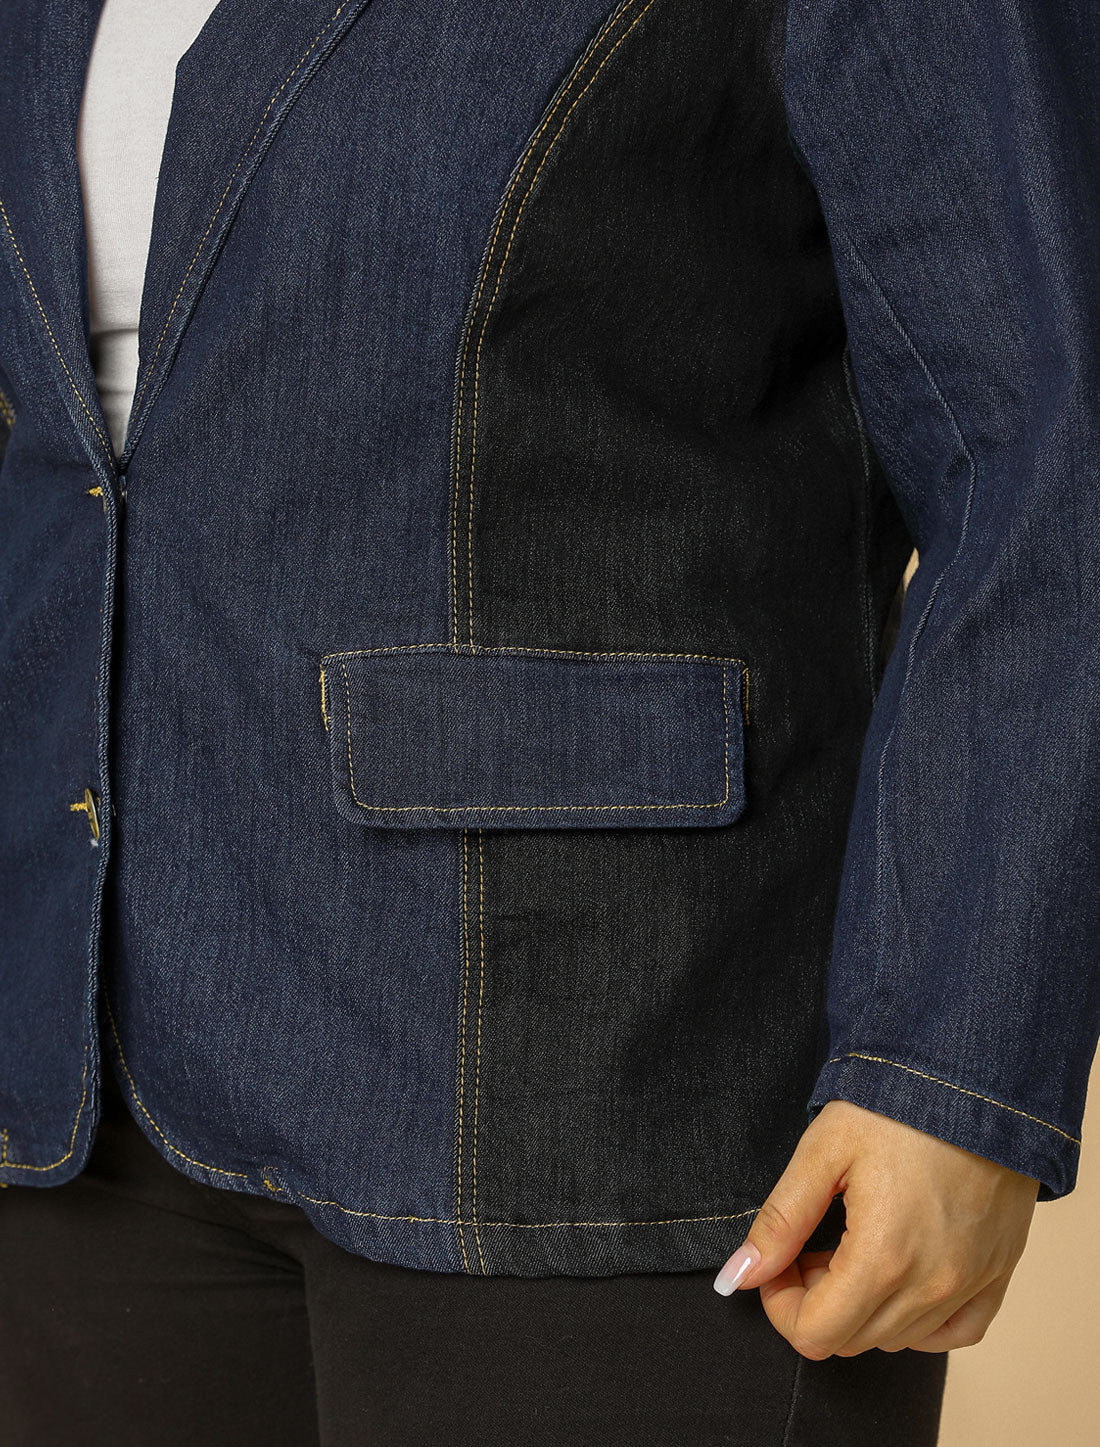 Bublédon Women's Plus Size Denim Jacket Notched Lapel Color Block Stretch Blazer